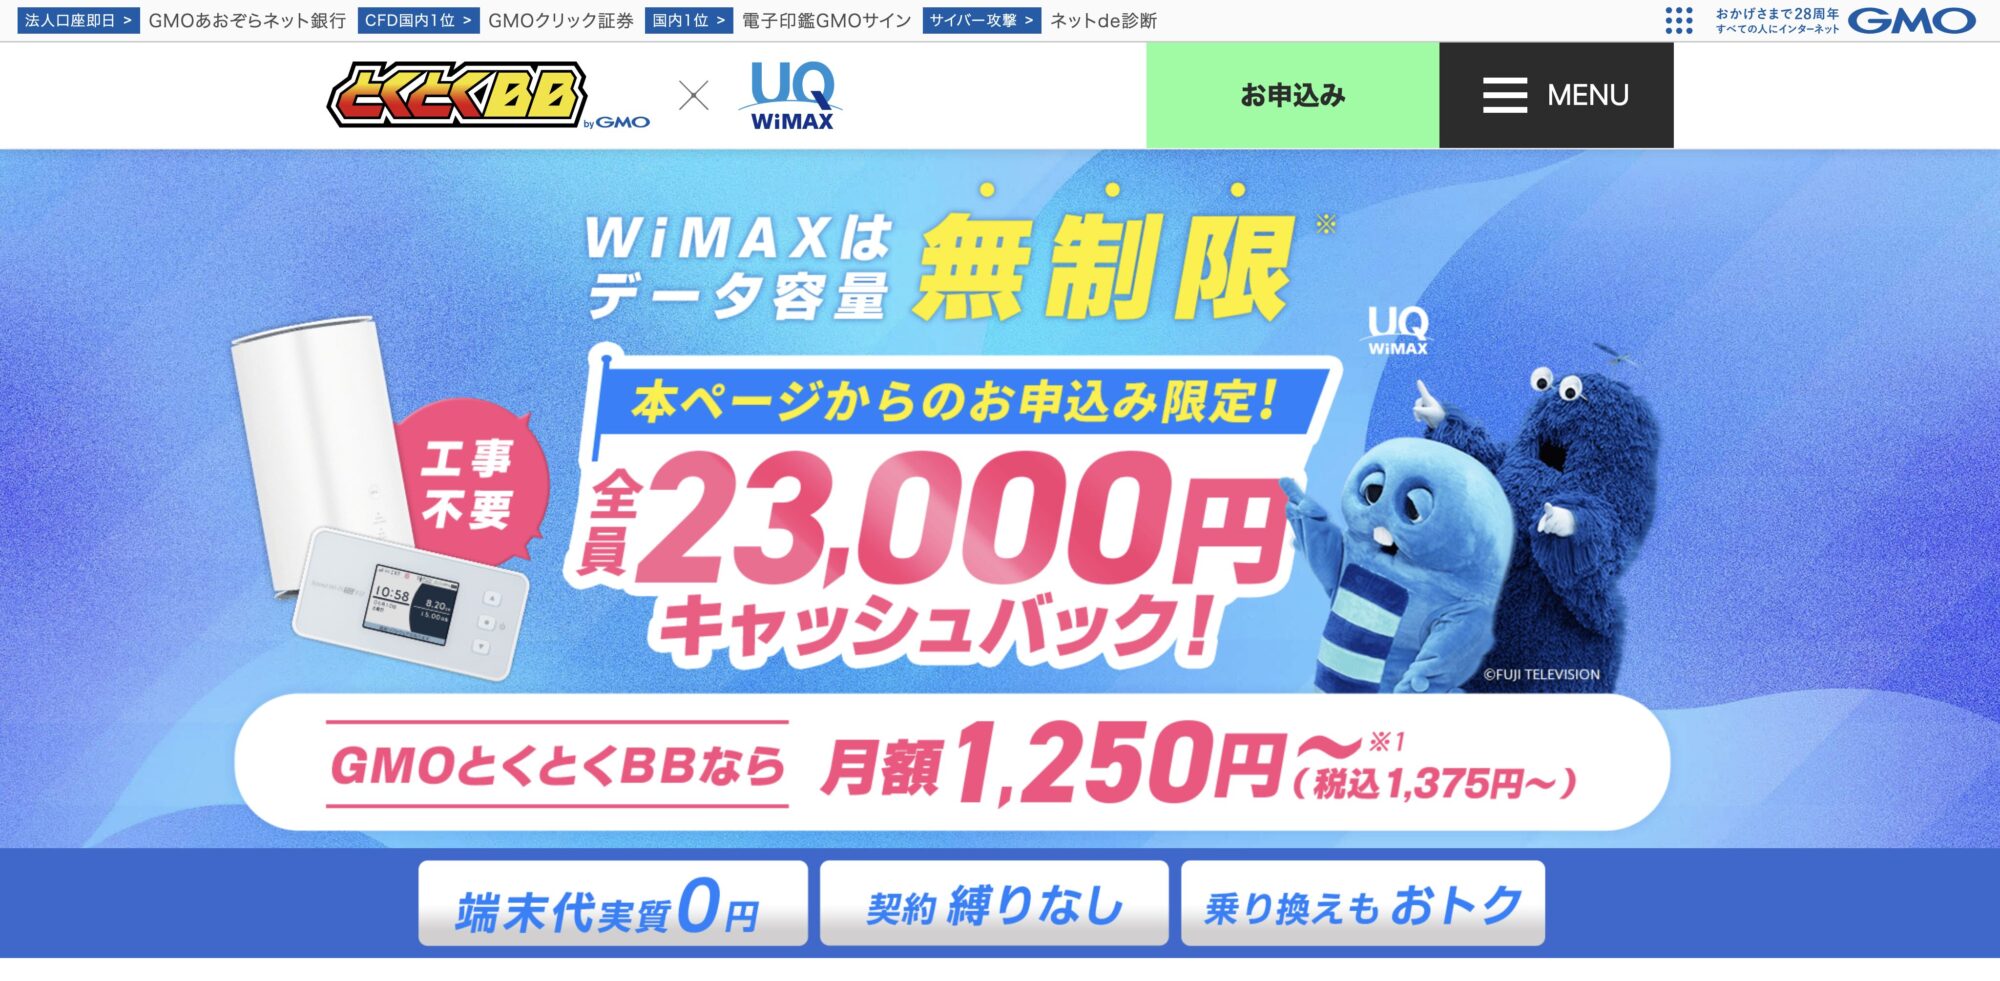 GMOとくとくBB WiMAX 公式サイト